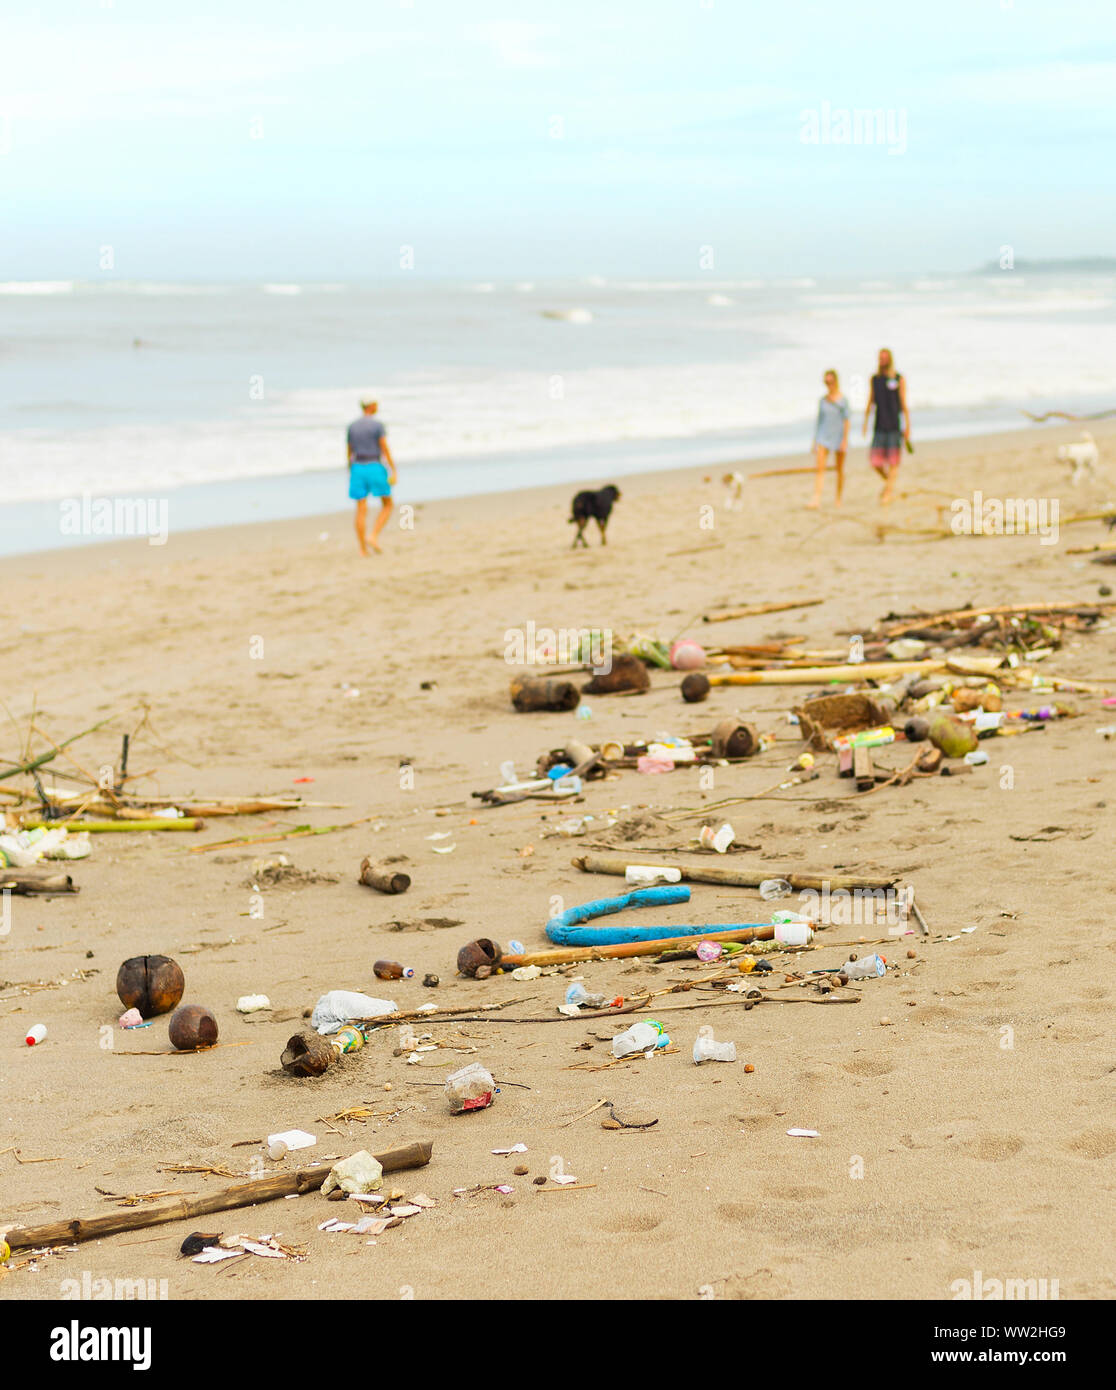 Les gens qui marchent avec les chiens par la pollution et des déchets en plastique avec plage. L'île de Bali, Indonésie Banque D'Images